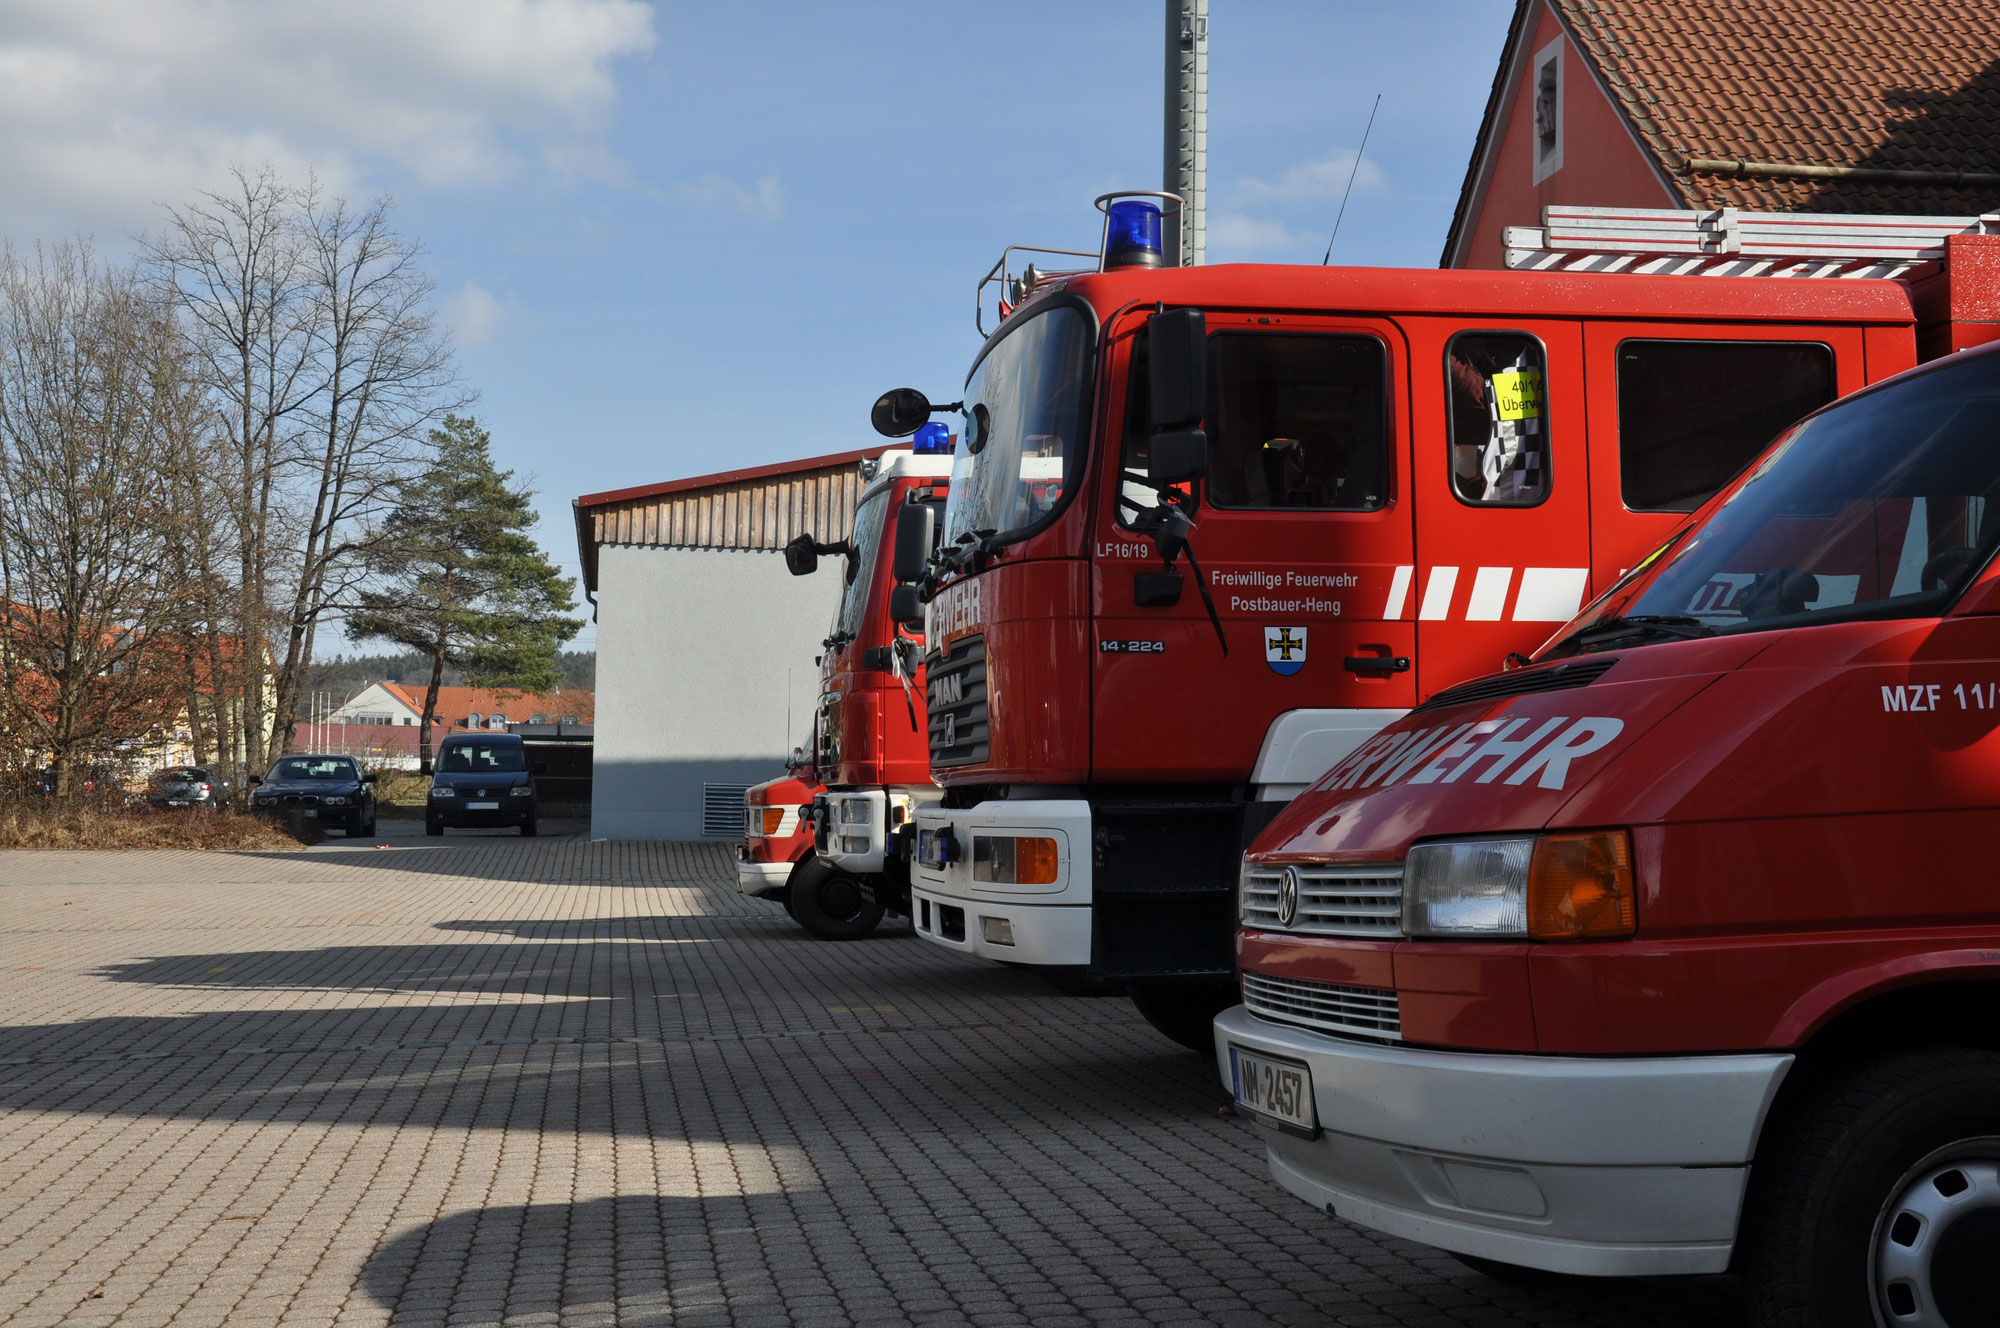 (c) Feuerwehr-postbauer-heng.de